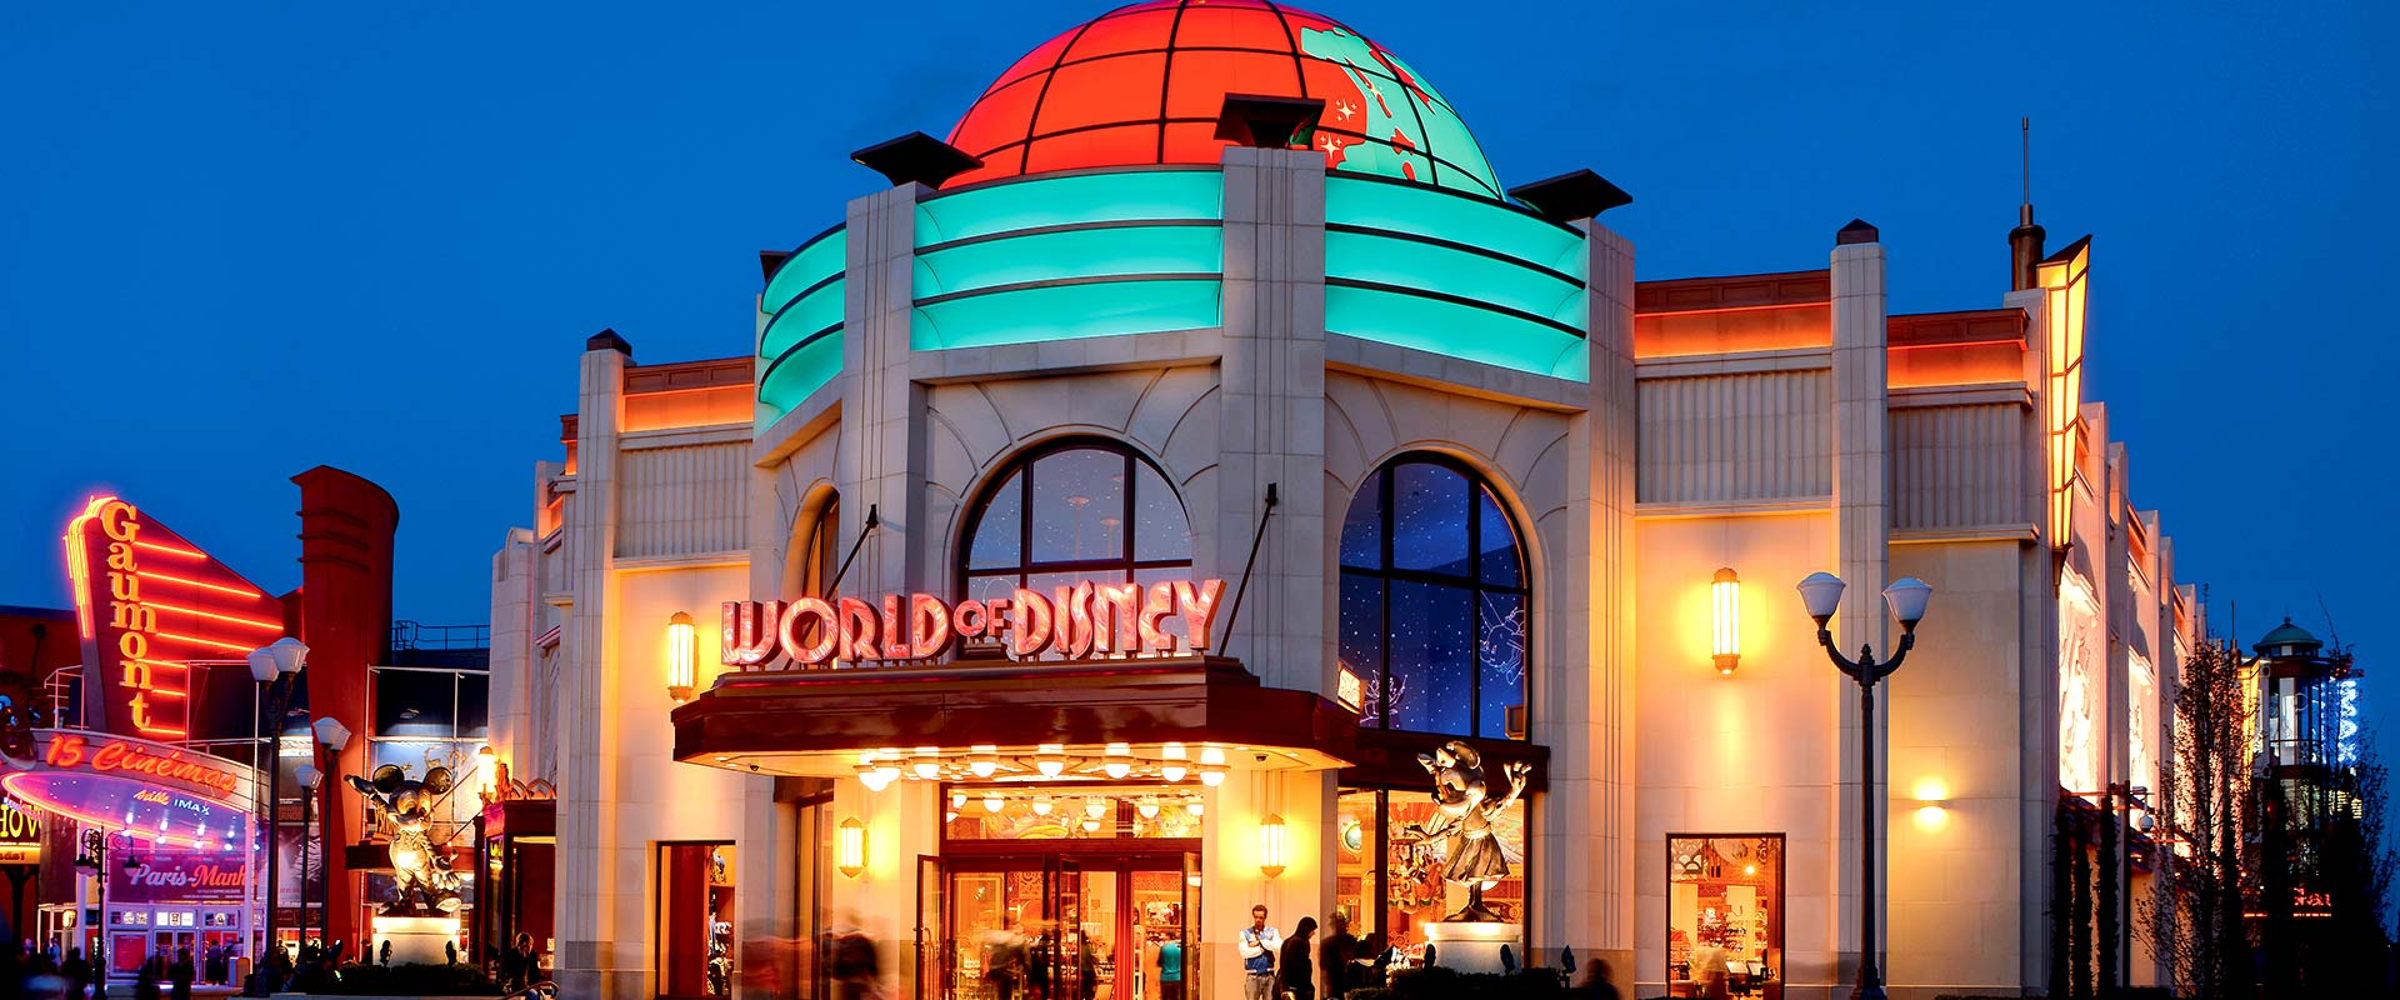 Disney Village : du rêve américain jusqu’à aujourd’hui, DLRP